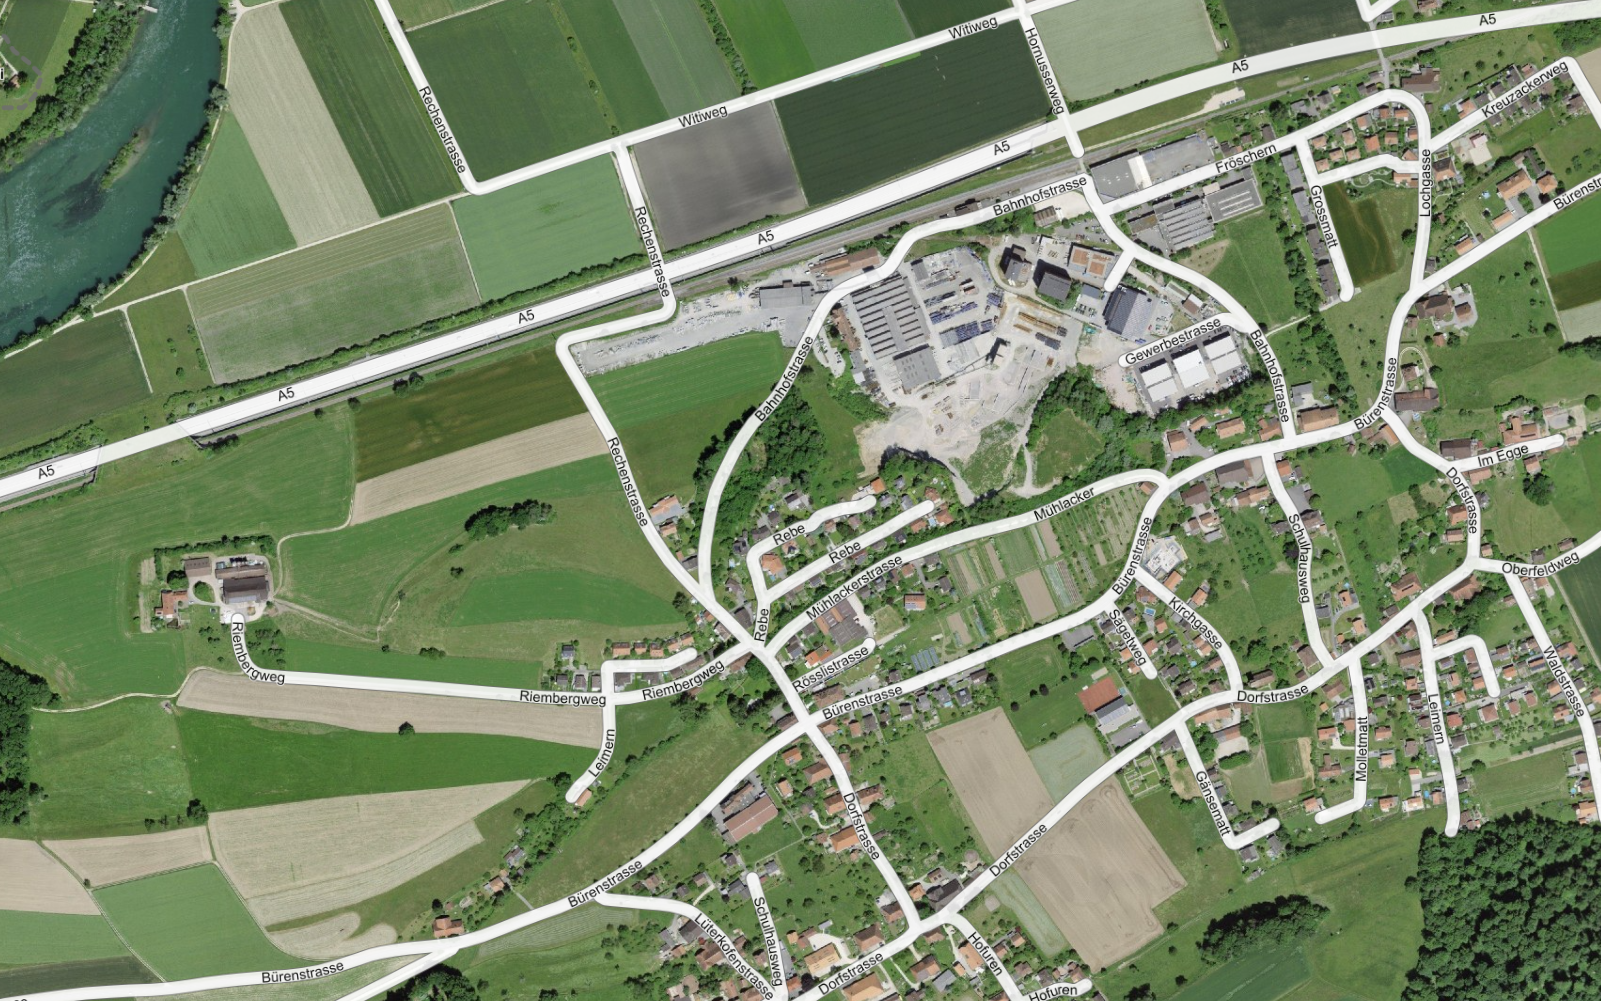 L'image montre une vue aérienne de Nennigkofen (SO), avec les noms de rues correspondants du répertoire officiel.